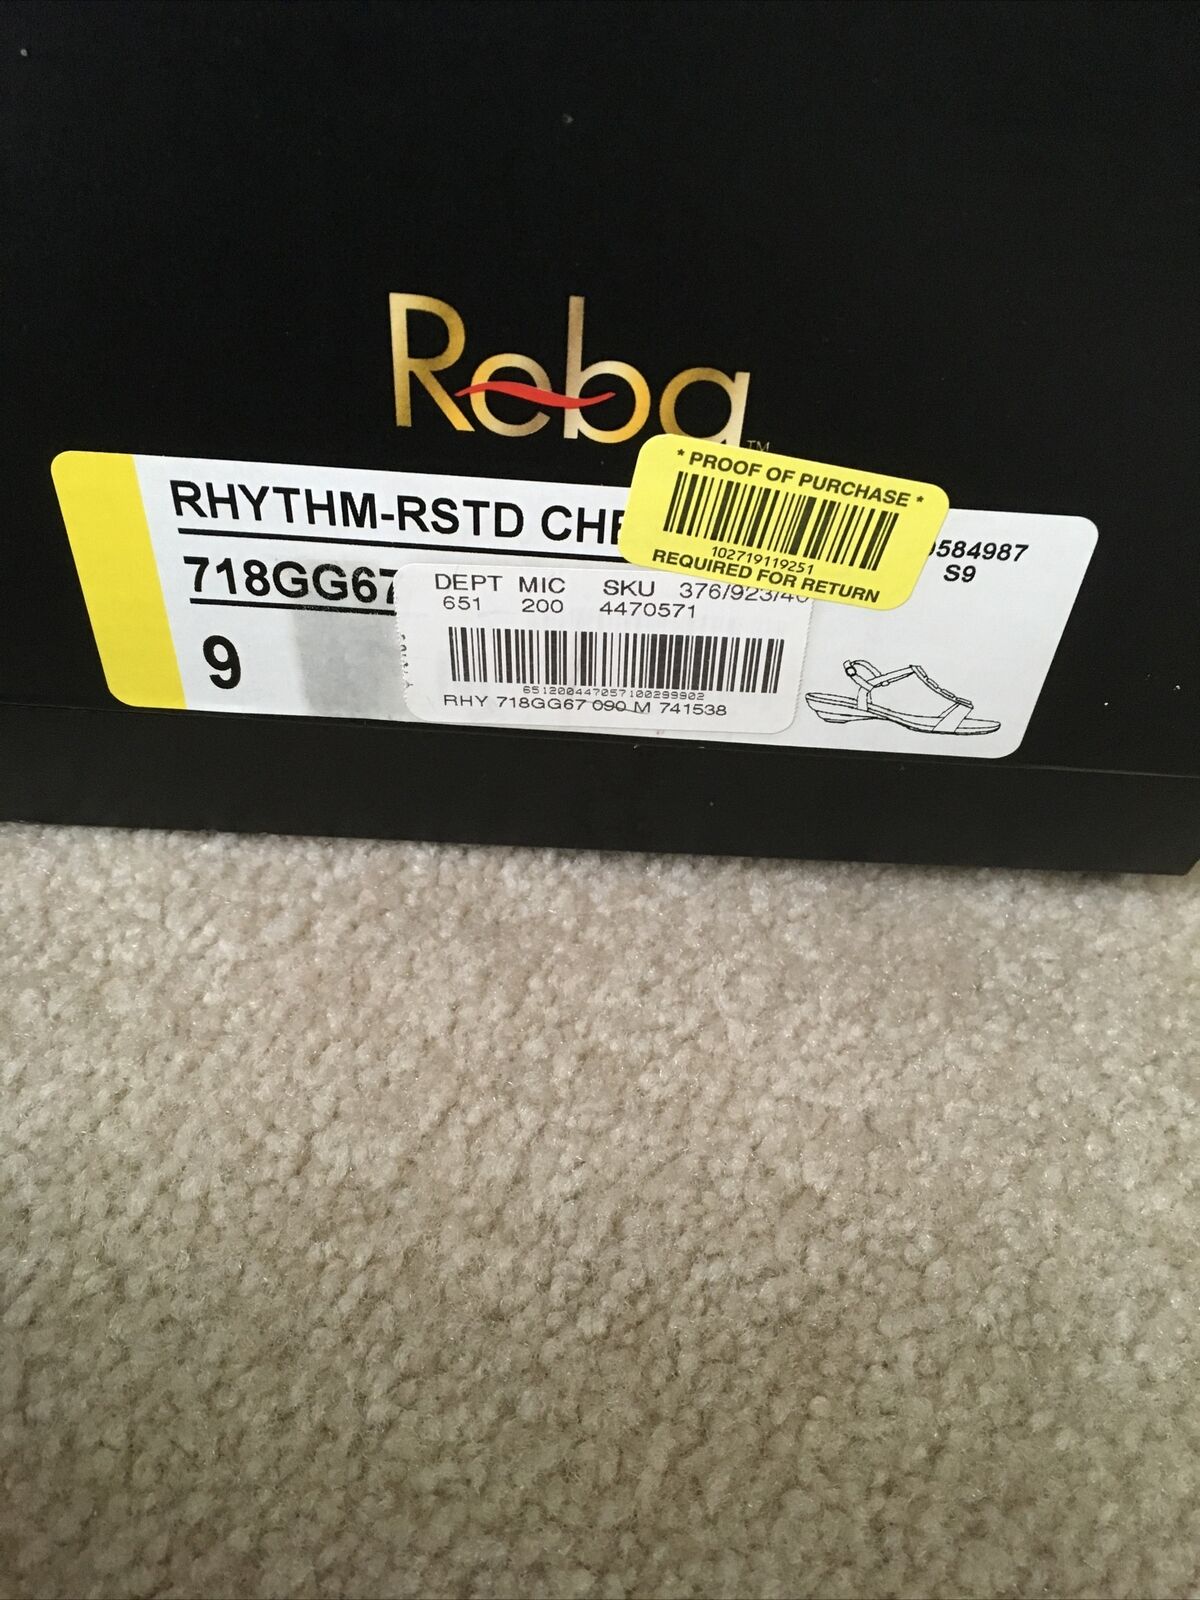 Reba Rhythm Chestnut Sandals  SIZE 9/10. - image 5